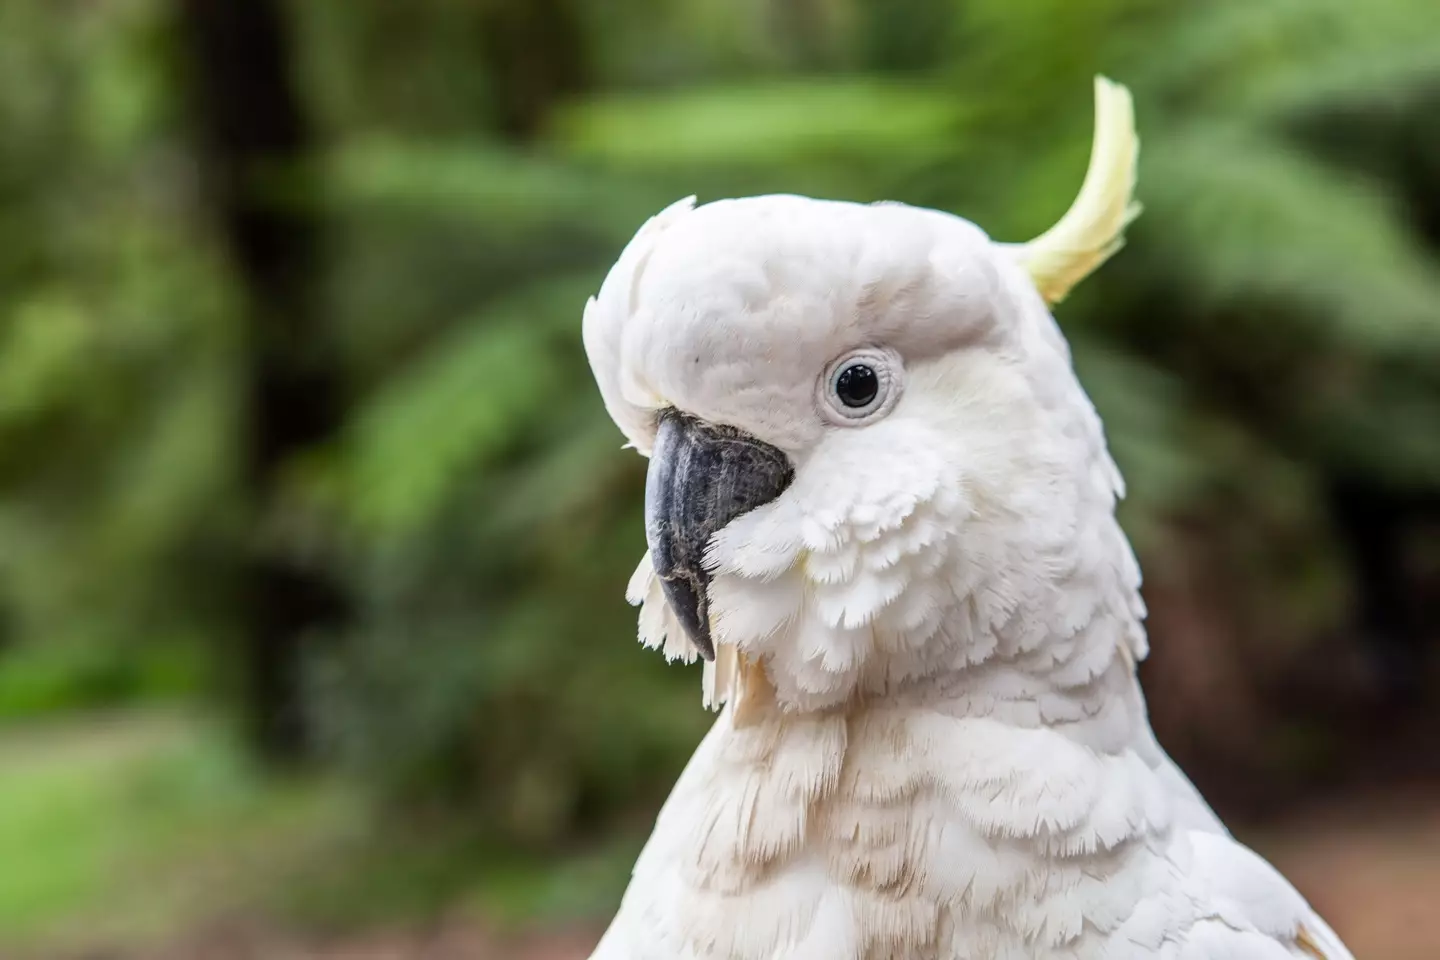 A cockatoo.